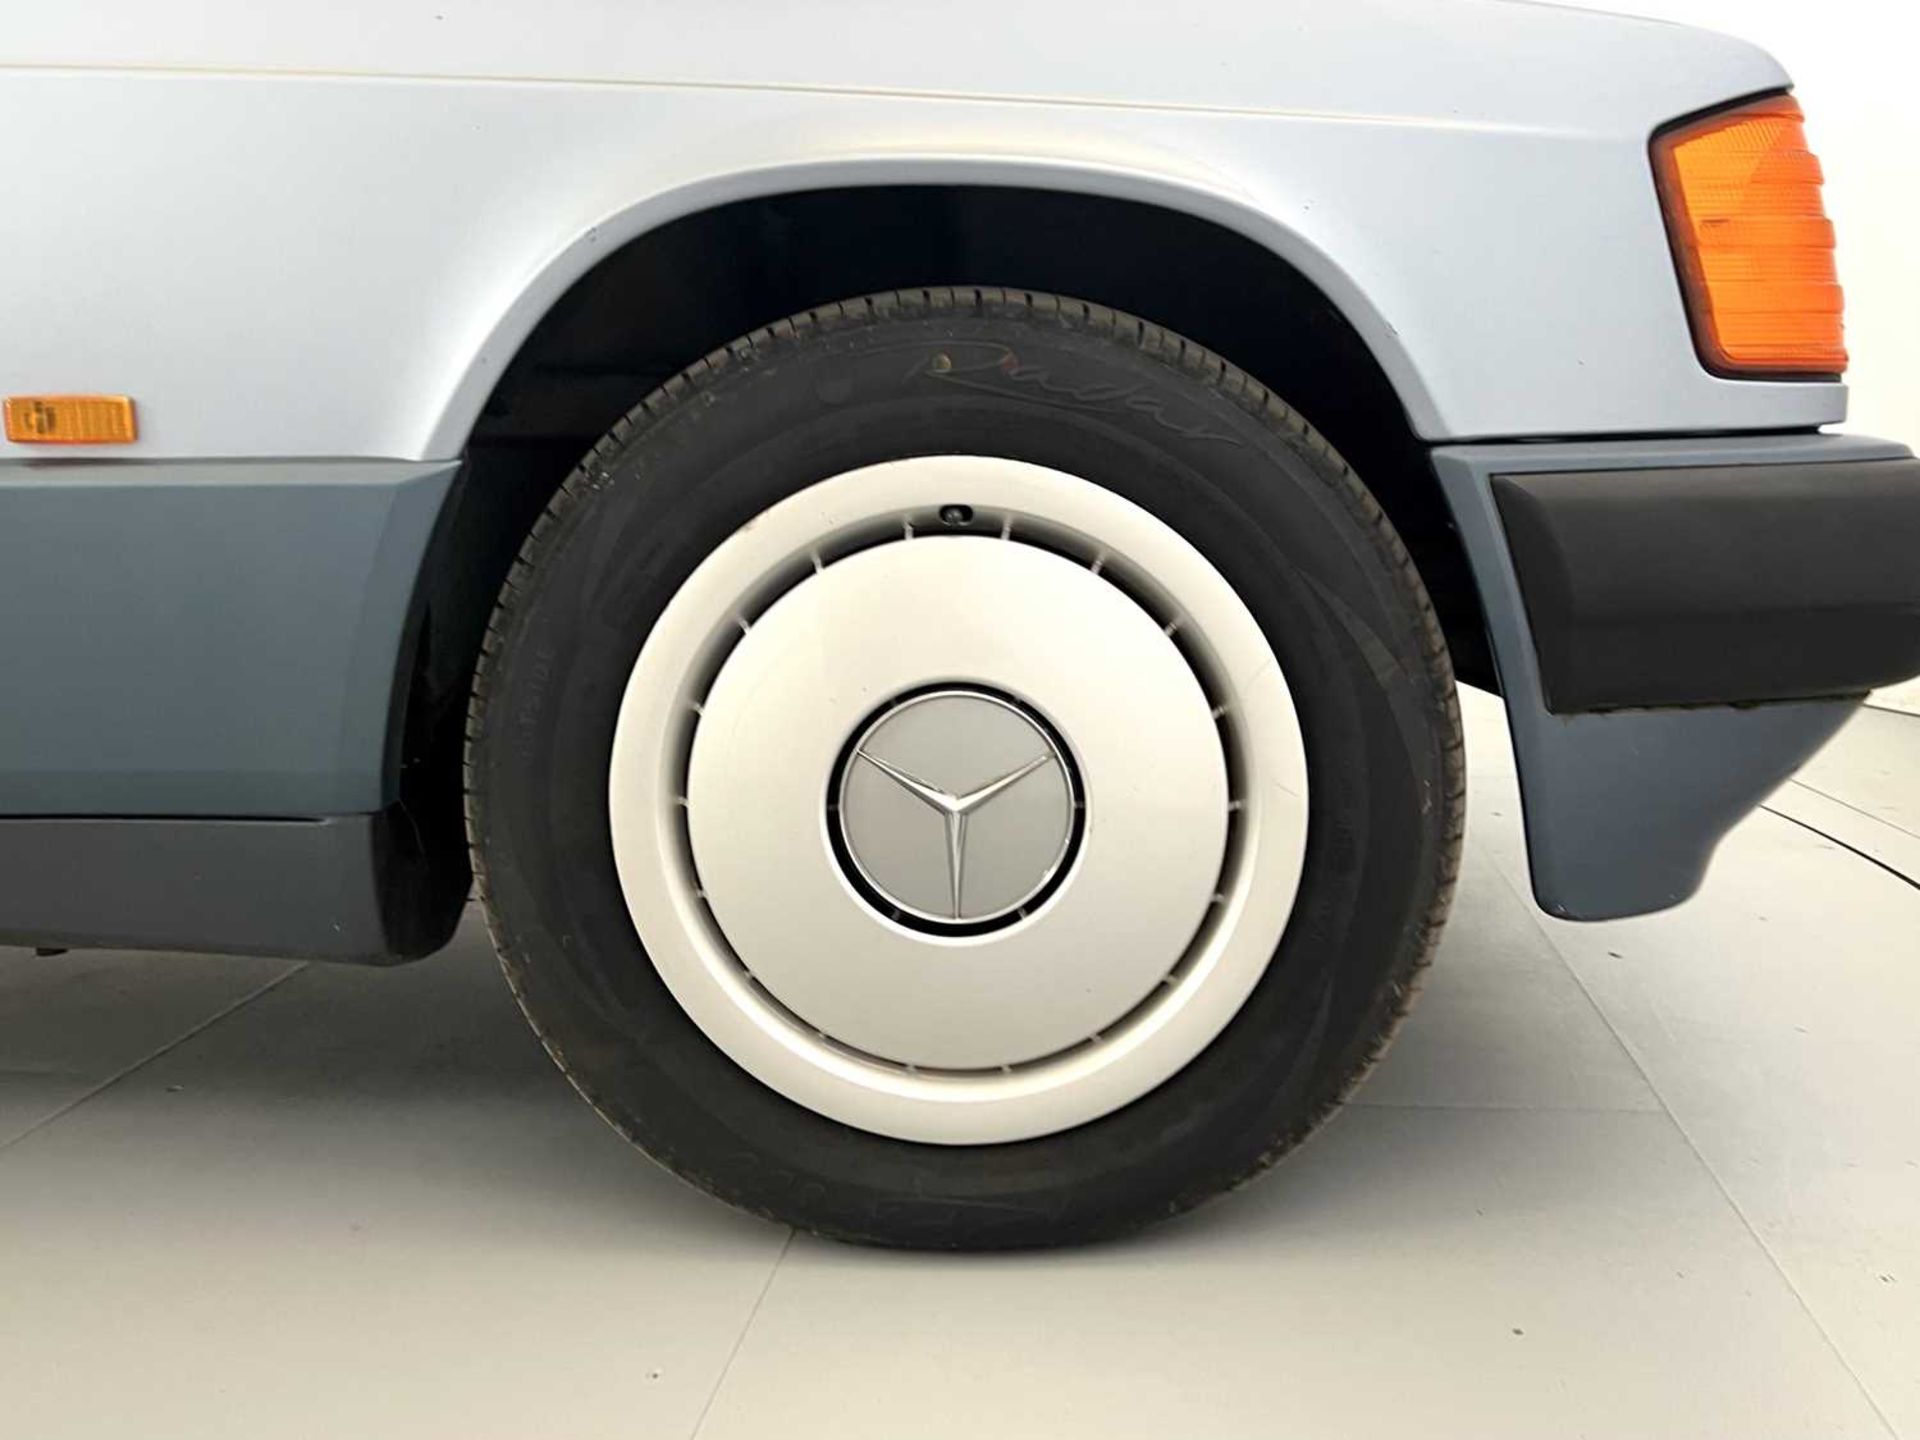 1990 Mercedes-Benz 190E - Image 16 of 32